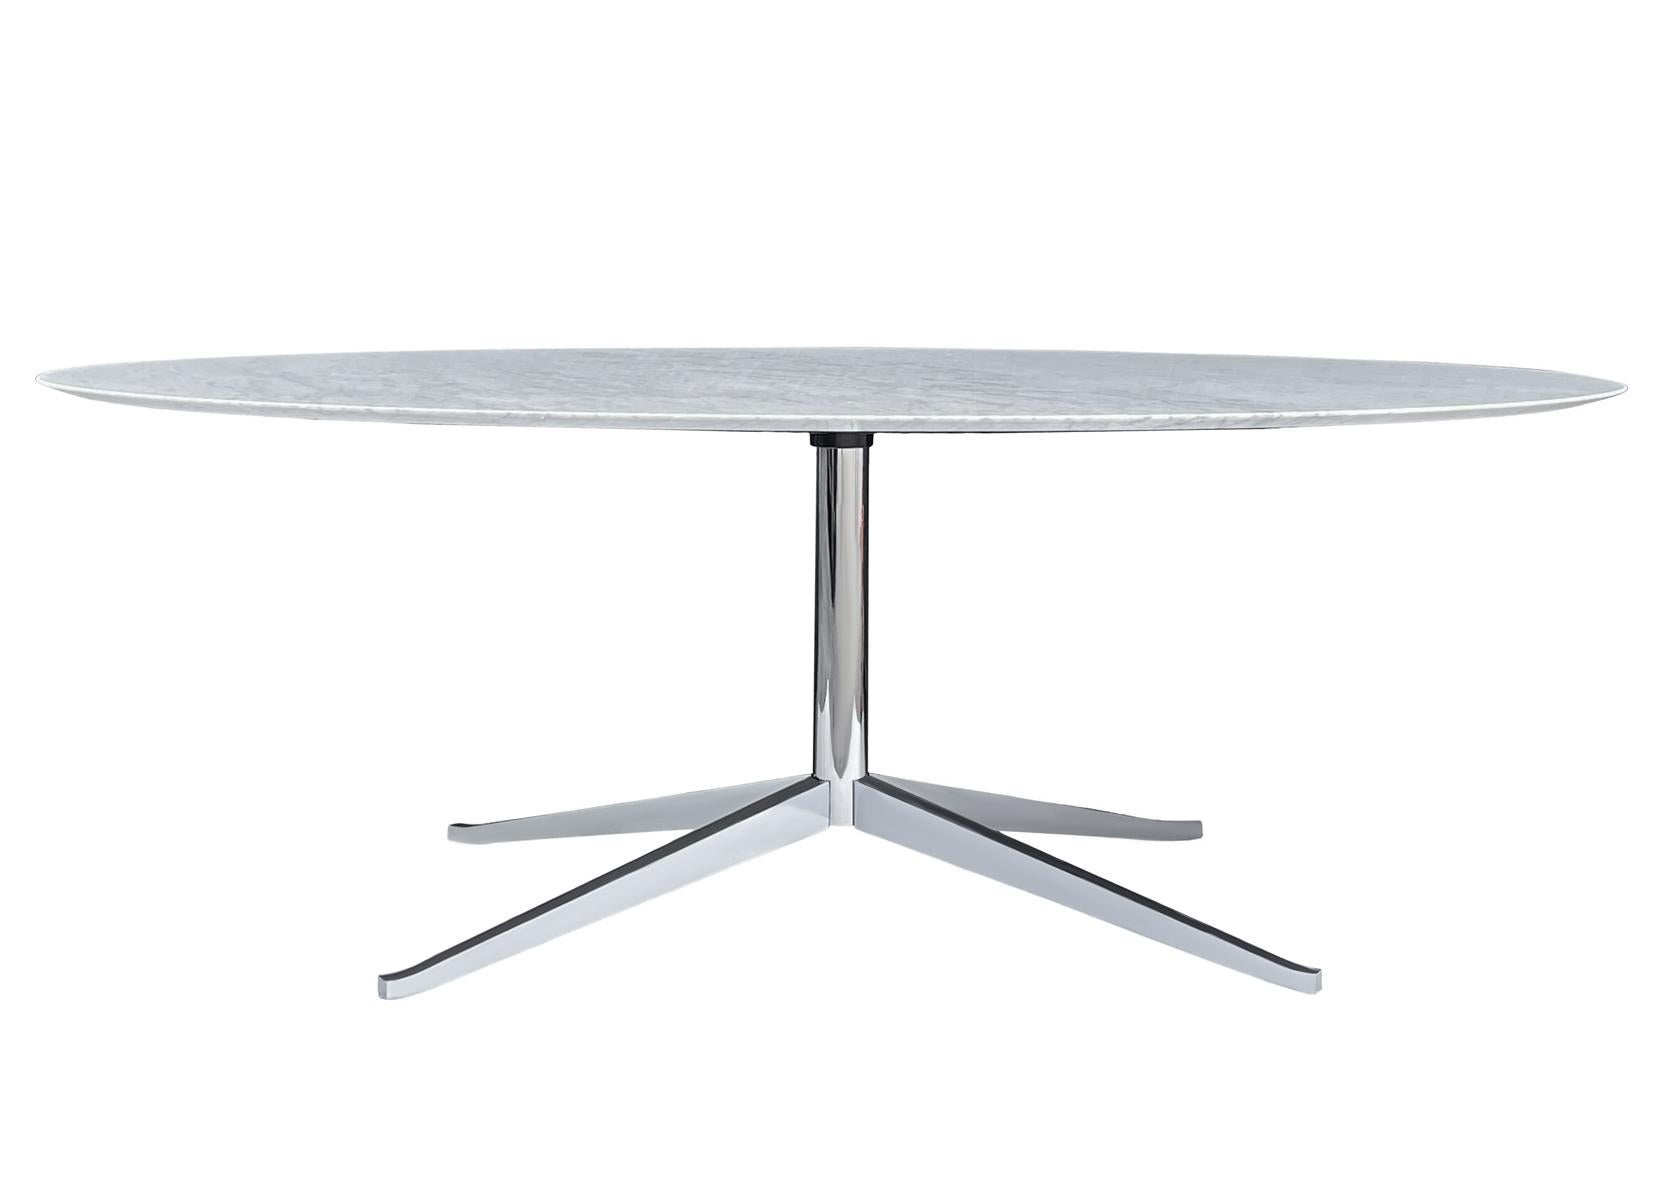 Ein eleganter Tisch für die Geschäftsleitung, entworfen von Florence Knoll und hergestellt von Knoll. Er verfügt über eine wunderschöne polierte Platte aus weißem und grauem Carrara-Marmor und einen verchromten Sternfuß. Dies war eine der teuersten